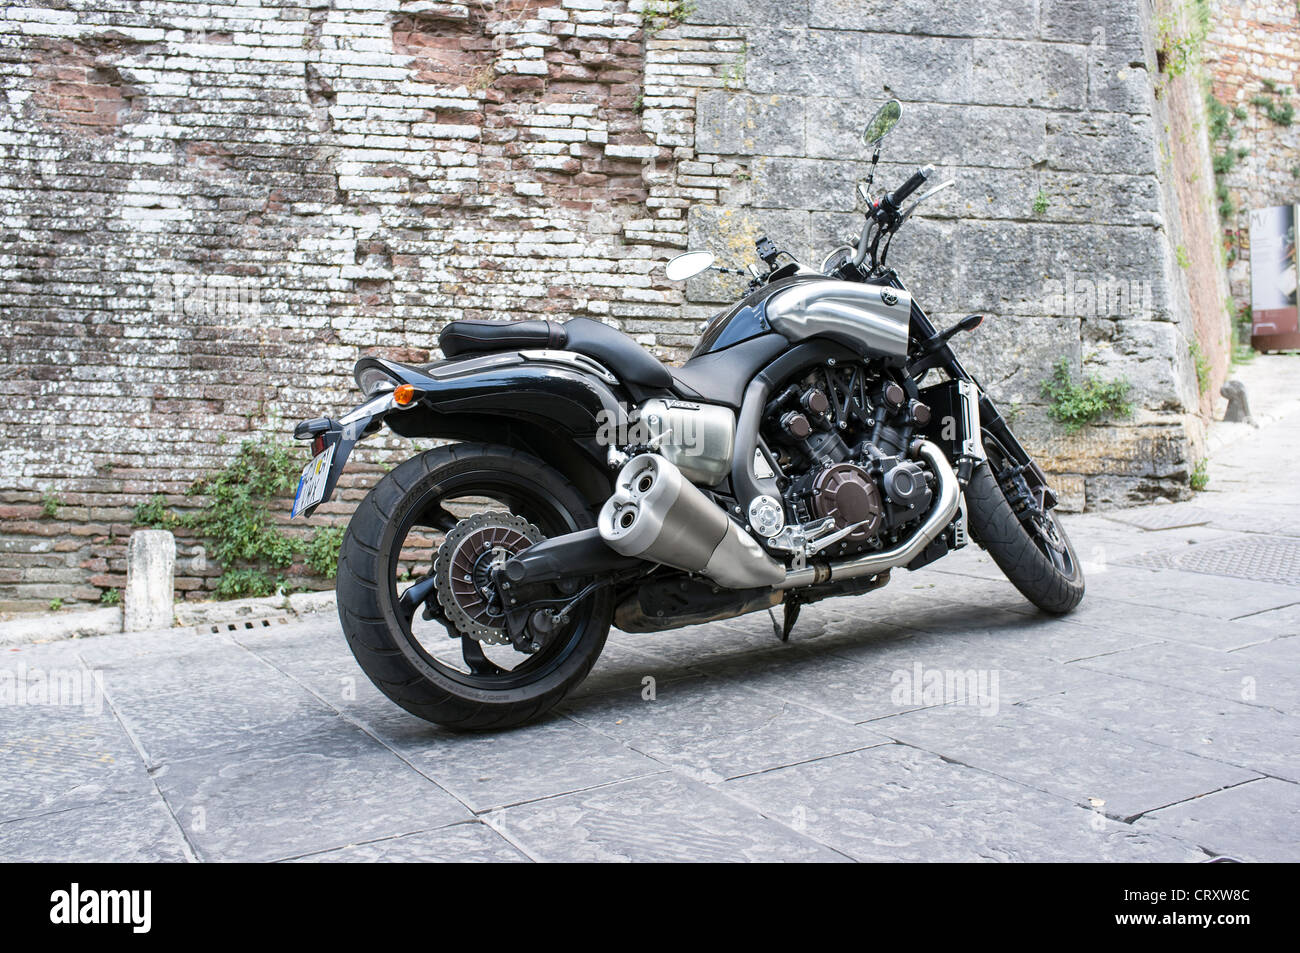 Yamaha V Max motorcycle parked in Italian street Stock Photo